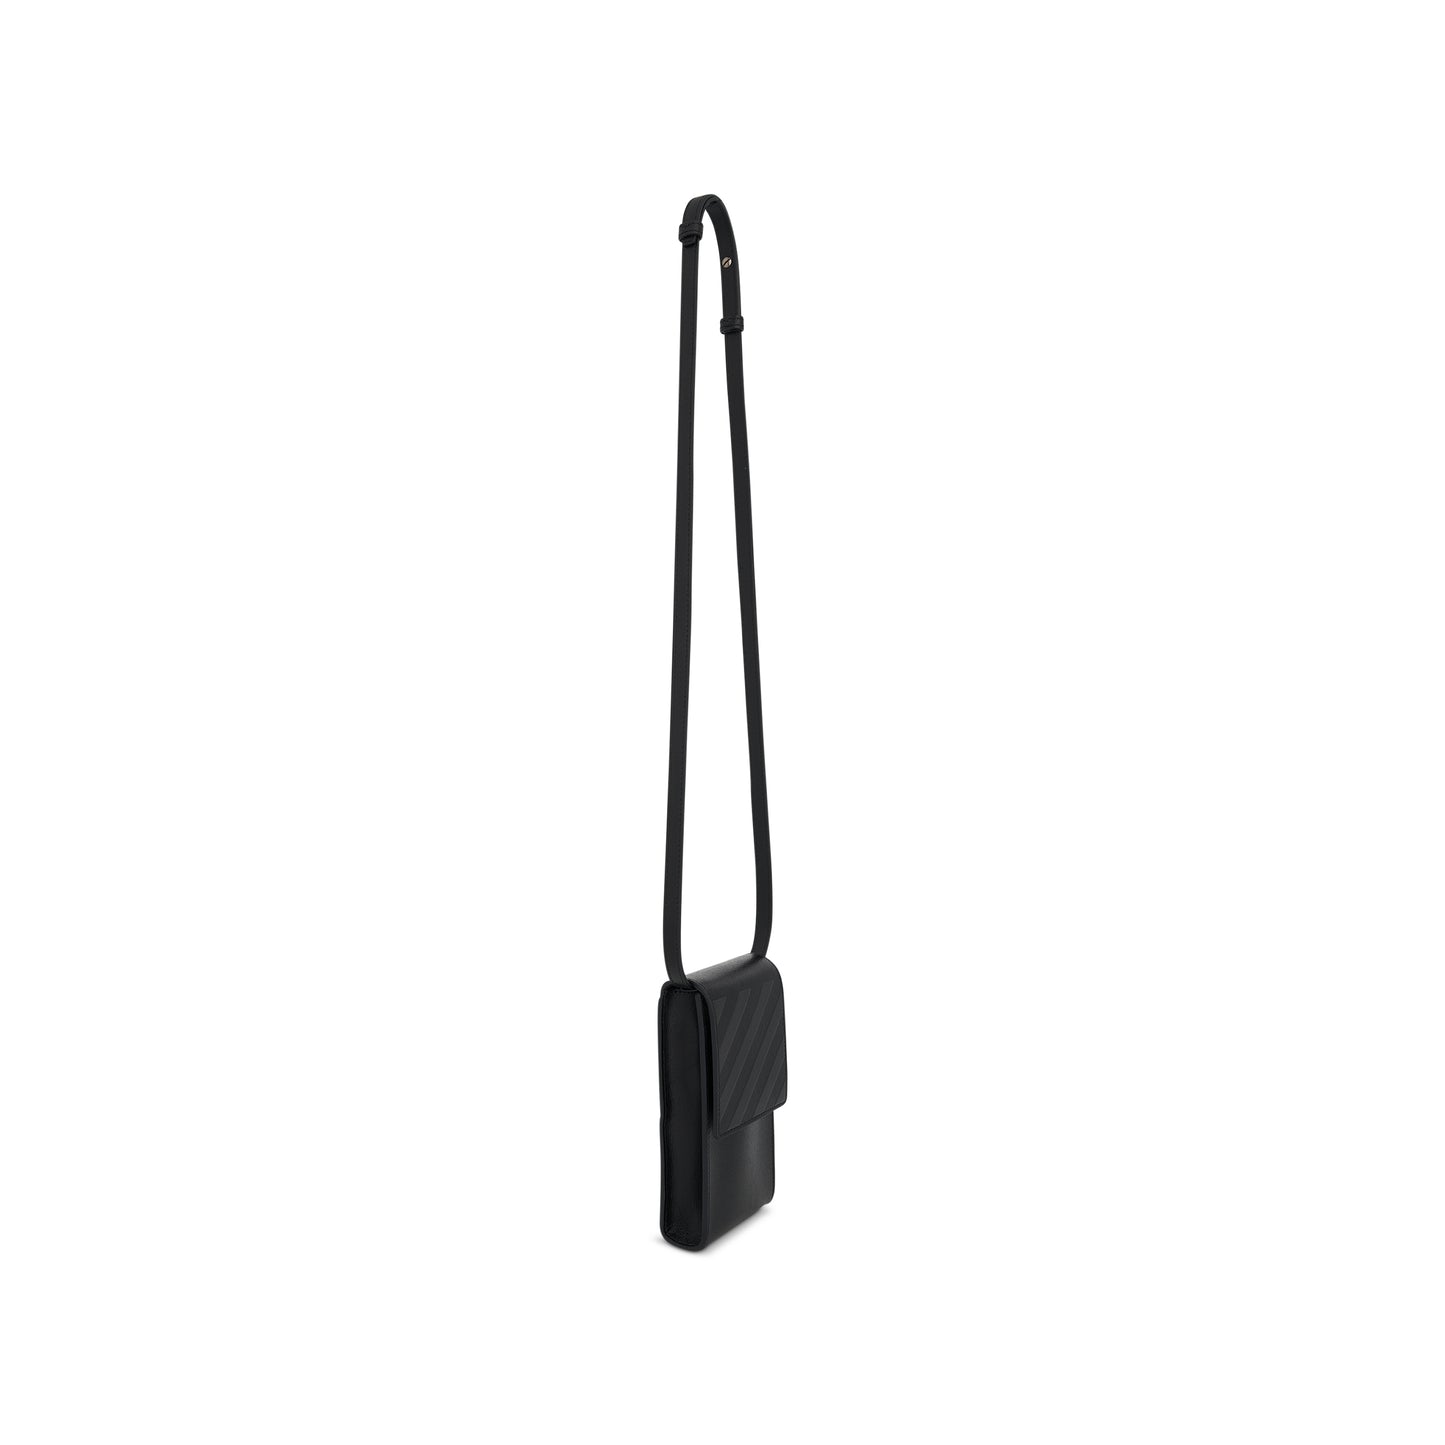 3D Diagonal Saff Neck Phone Holder in Black